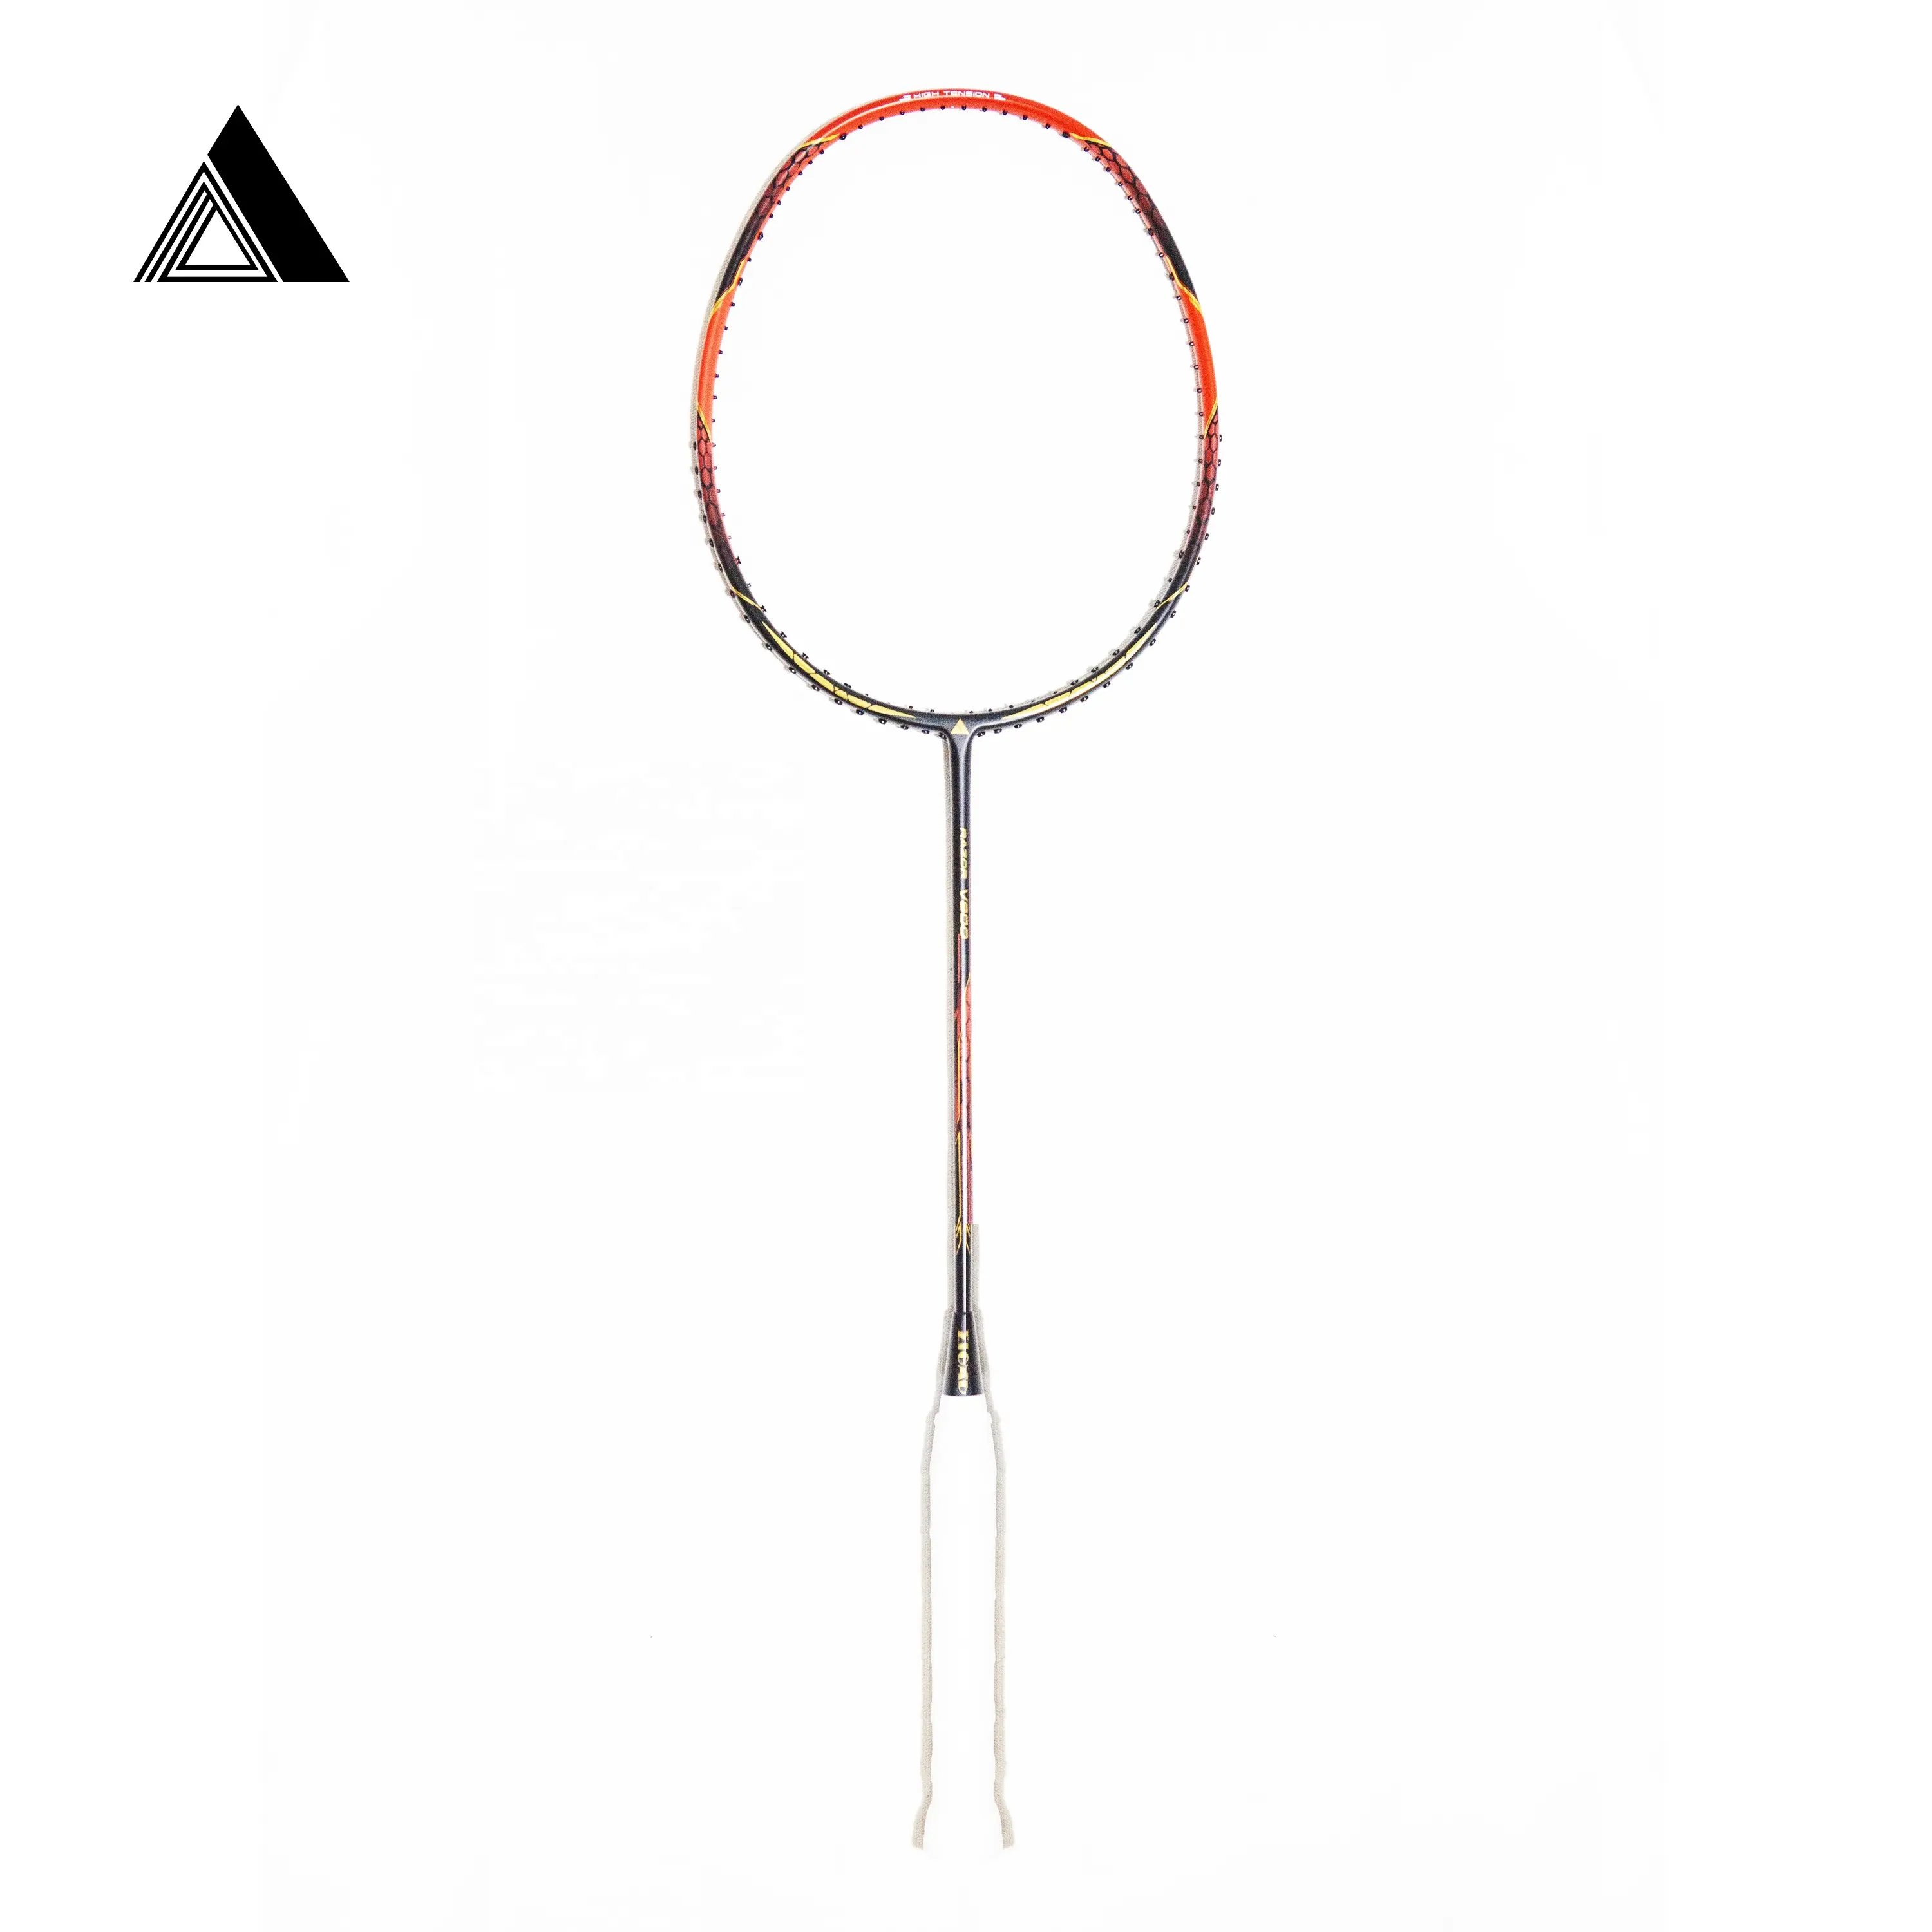 Yeni varış Zigad üst marka 4U ultra hafif yüksek modüllü grafit kaliteli profesyonel badminton raketi